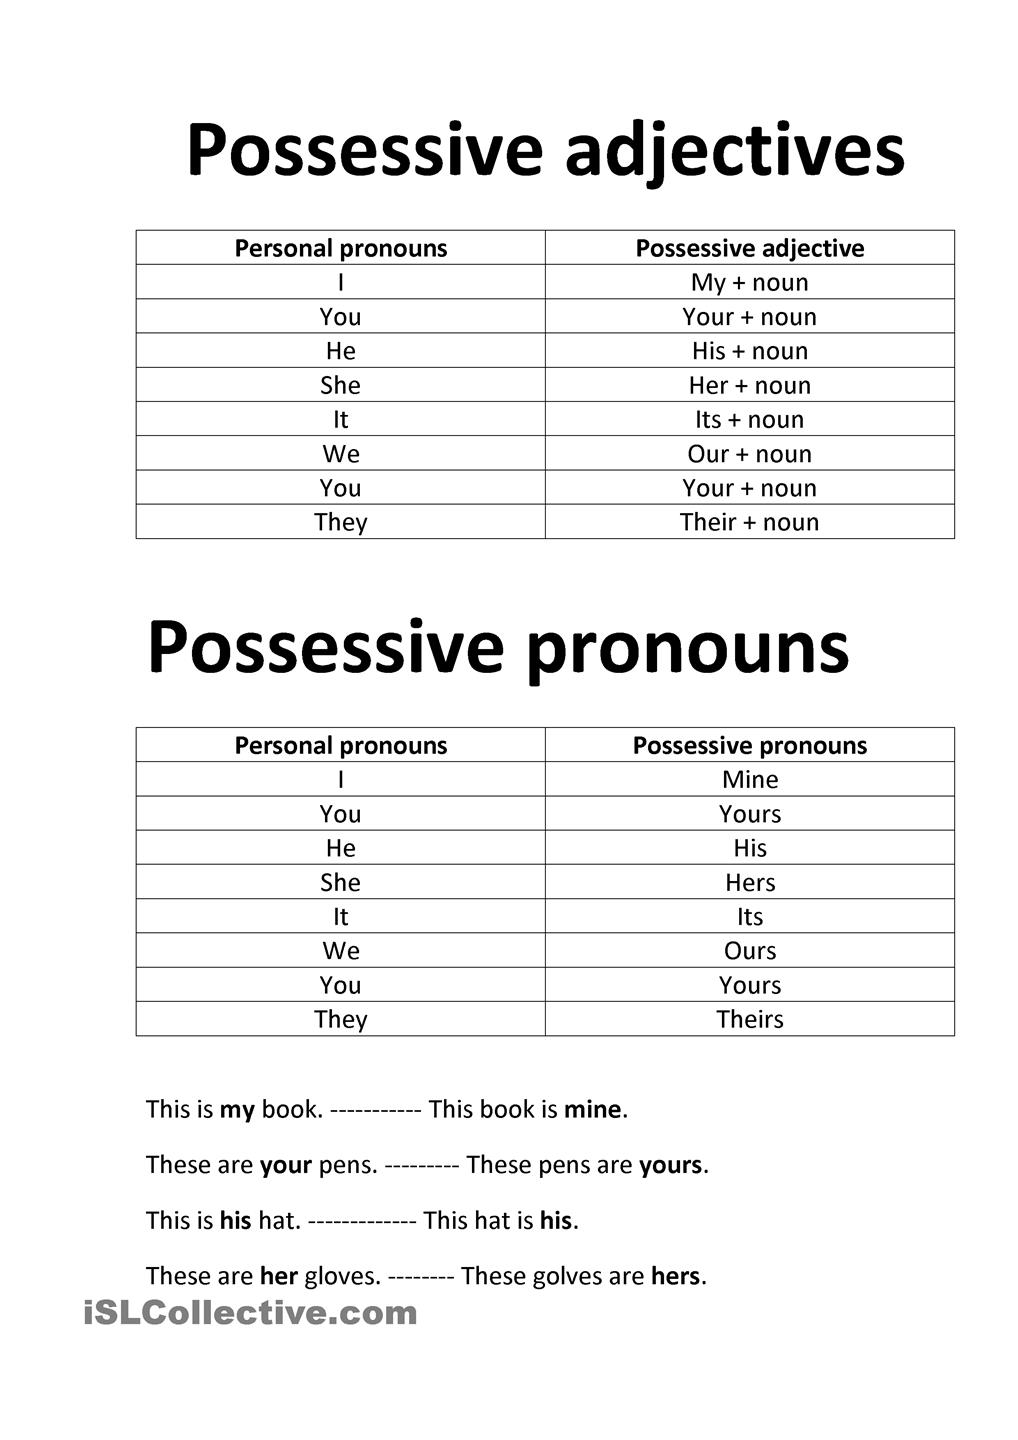 spanish-possessive-pronouns-worksheets